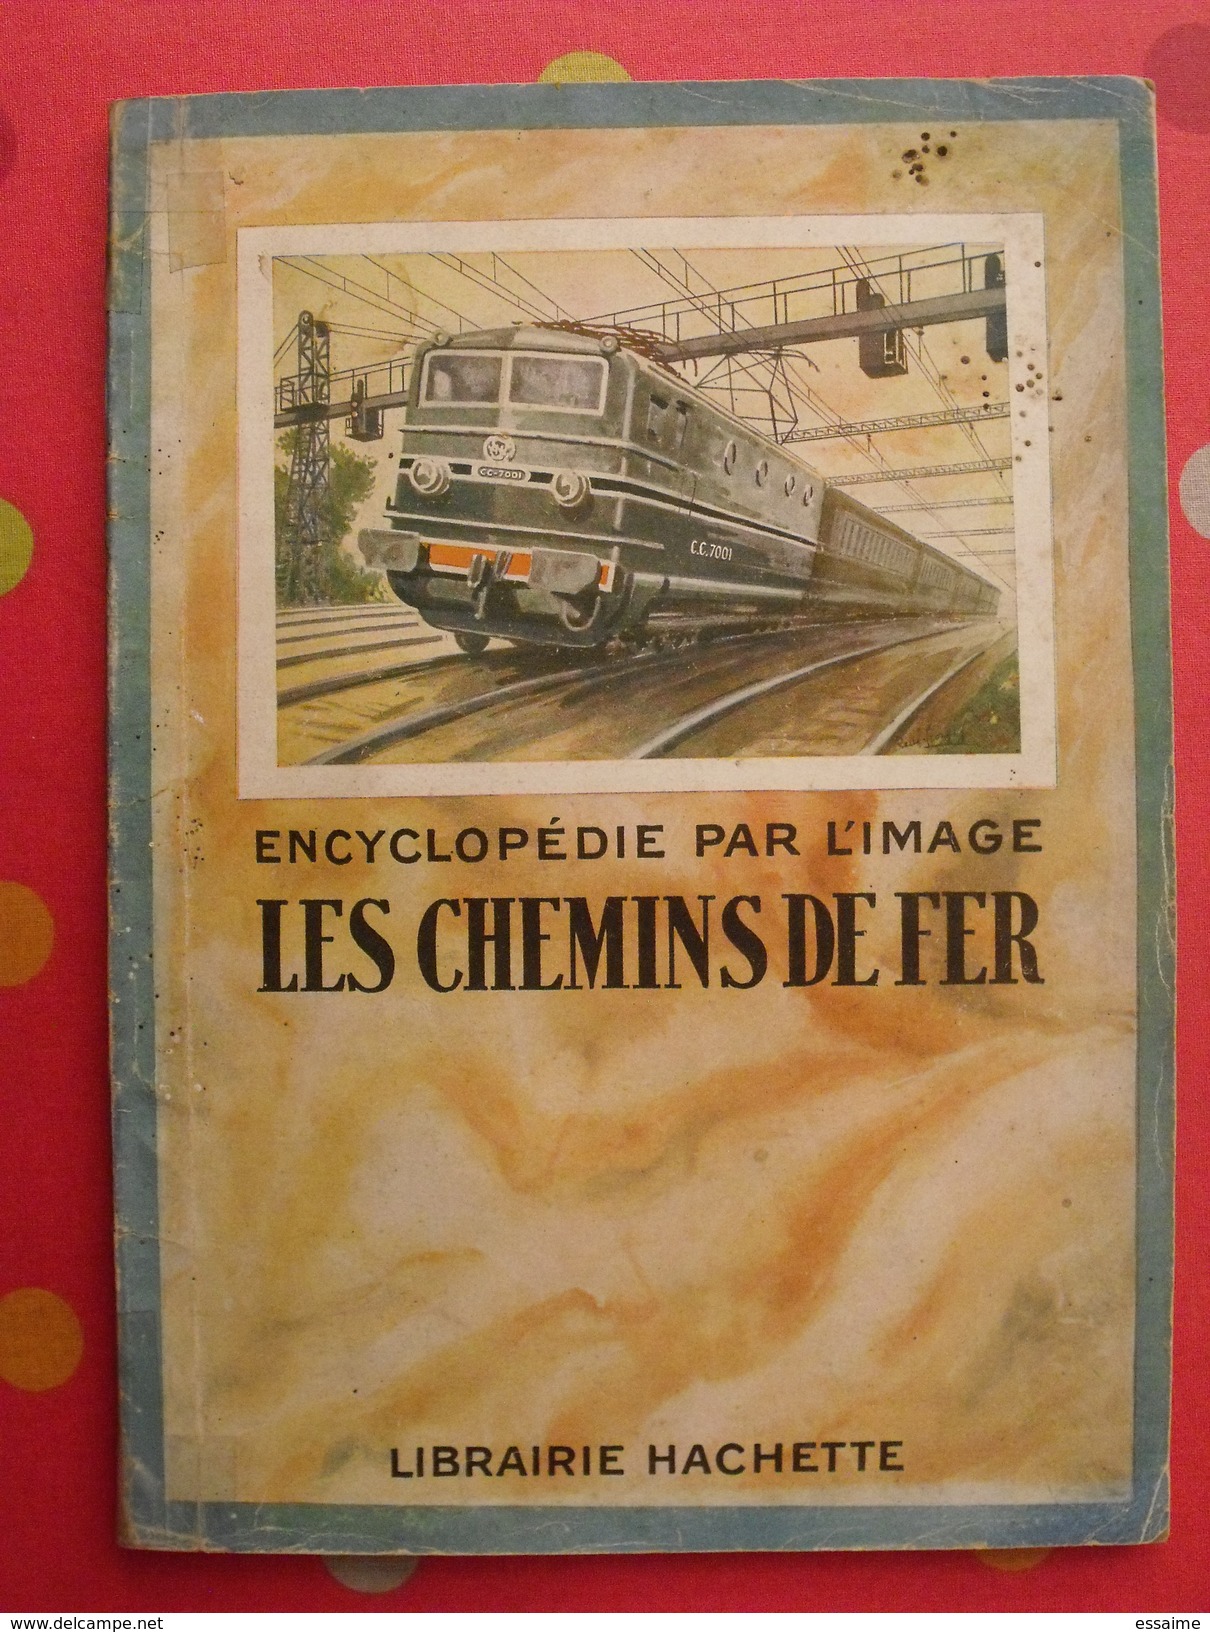 Les Chemins De Fer. Encyclopédie Par L'image. Hachette 1927. Bien Illustré - Ferrocarril & Tranvías